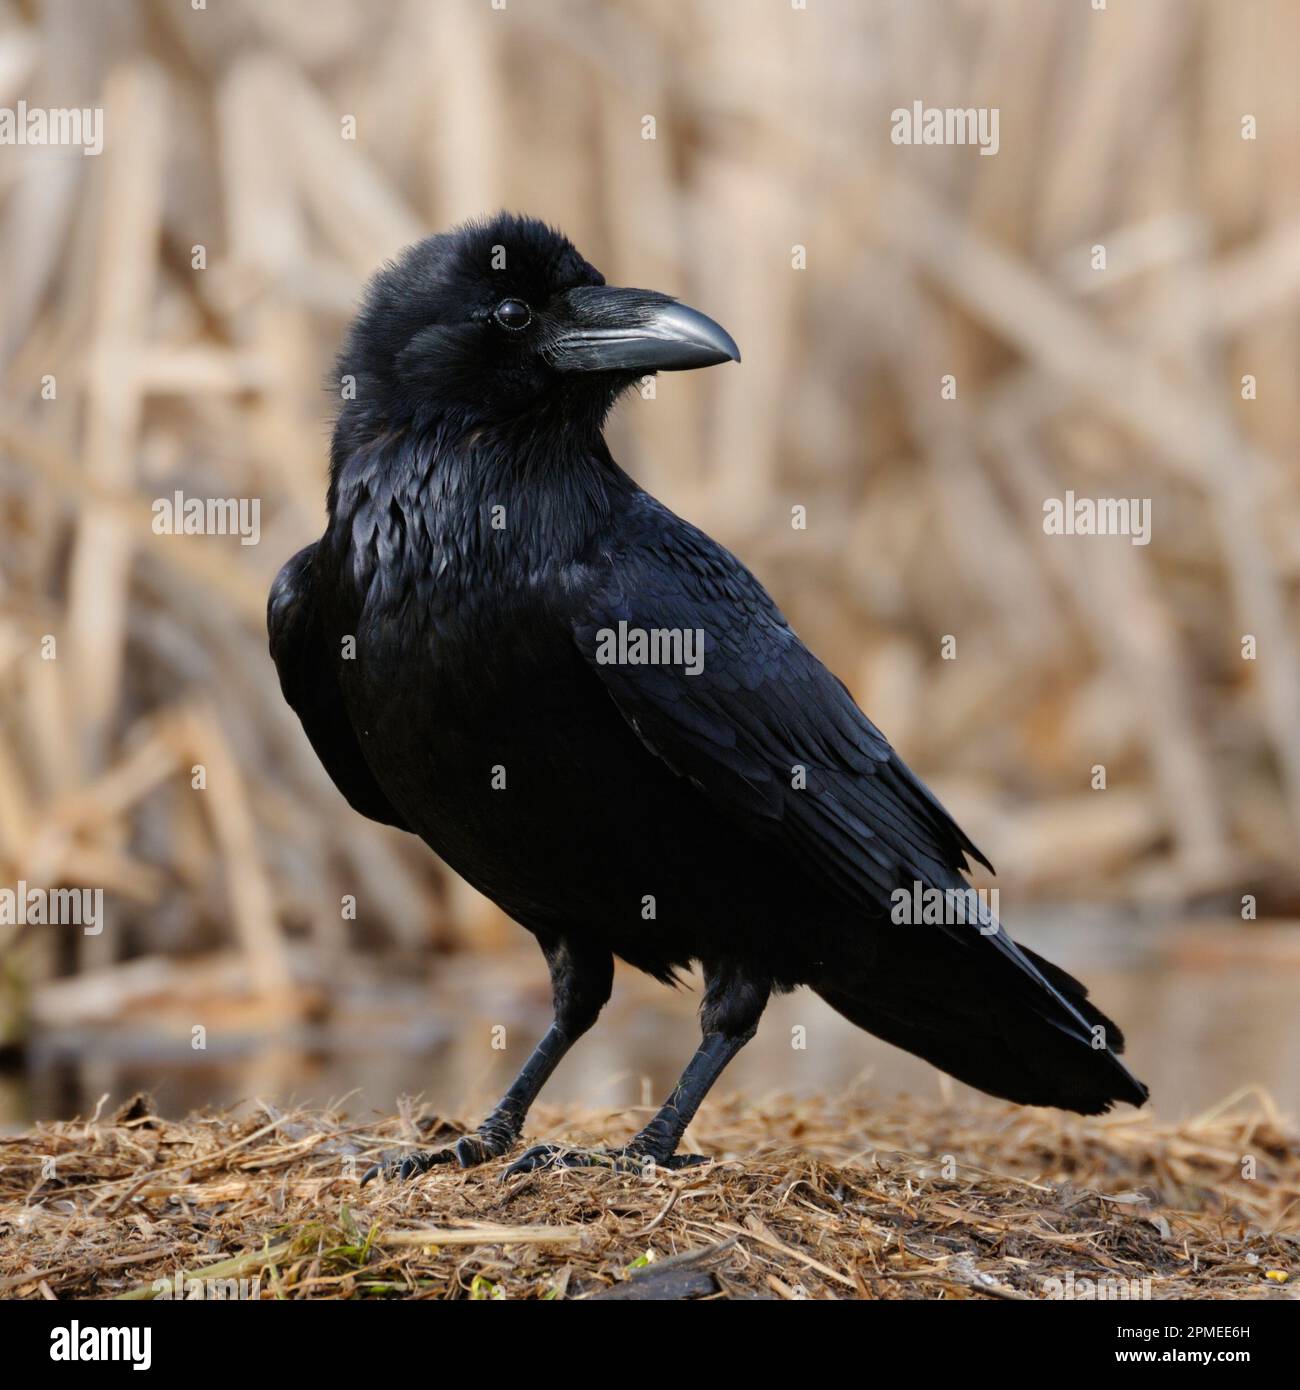 Gemeinsame Raven/Kolkrabe (Corvus Corax) auf dem Boden gehockt, in der Nähe detaillierte, schwarz glänzende Gefieder, aufmerksam beobachten, Wildlife, Europa. Stockfoto